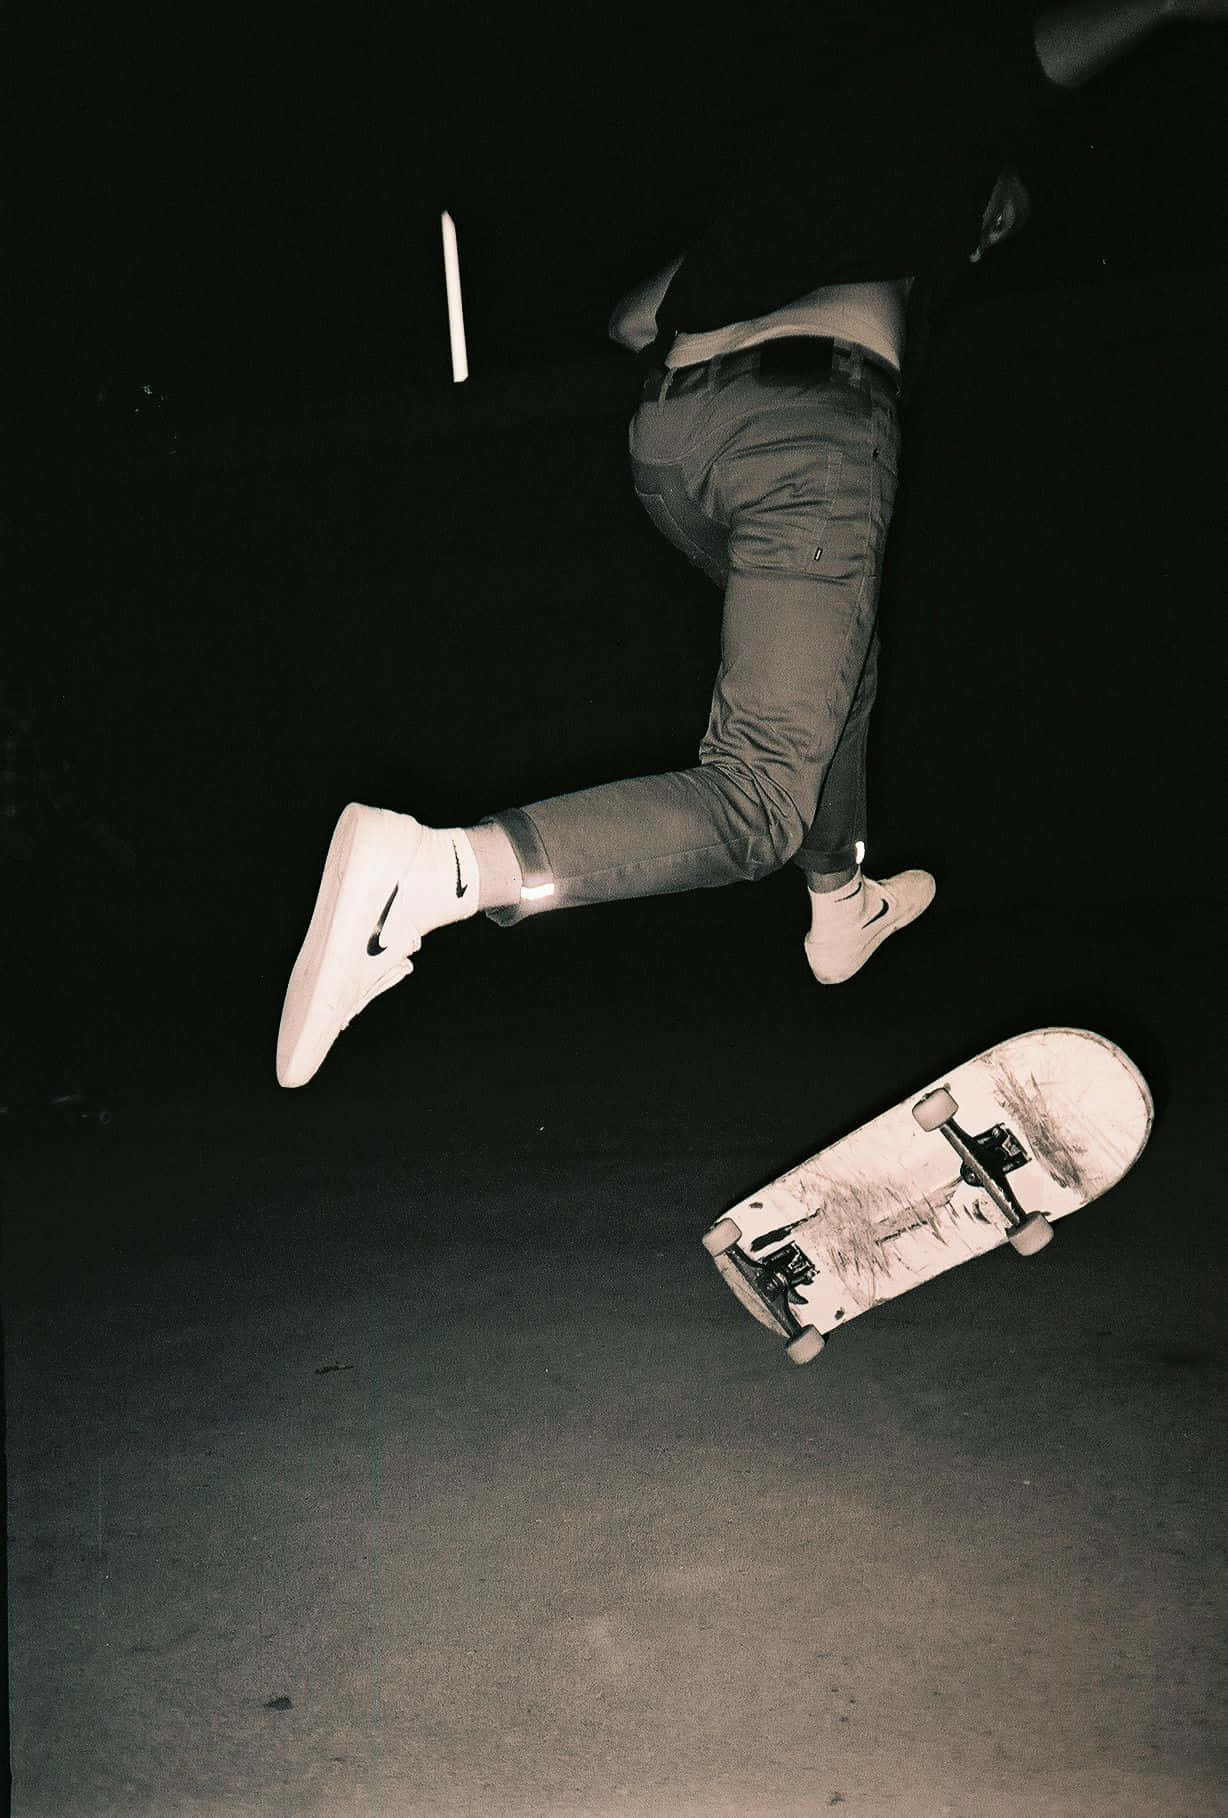 Einmann Führt Einen Trick Auf Einem Skateboard Aus.